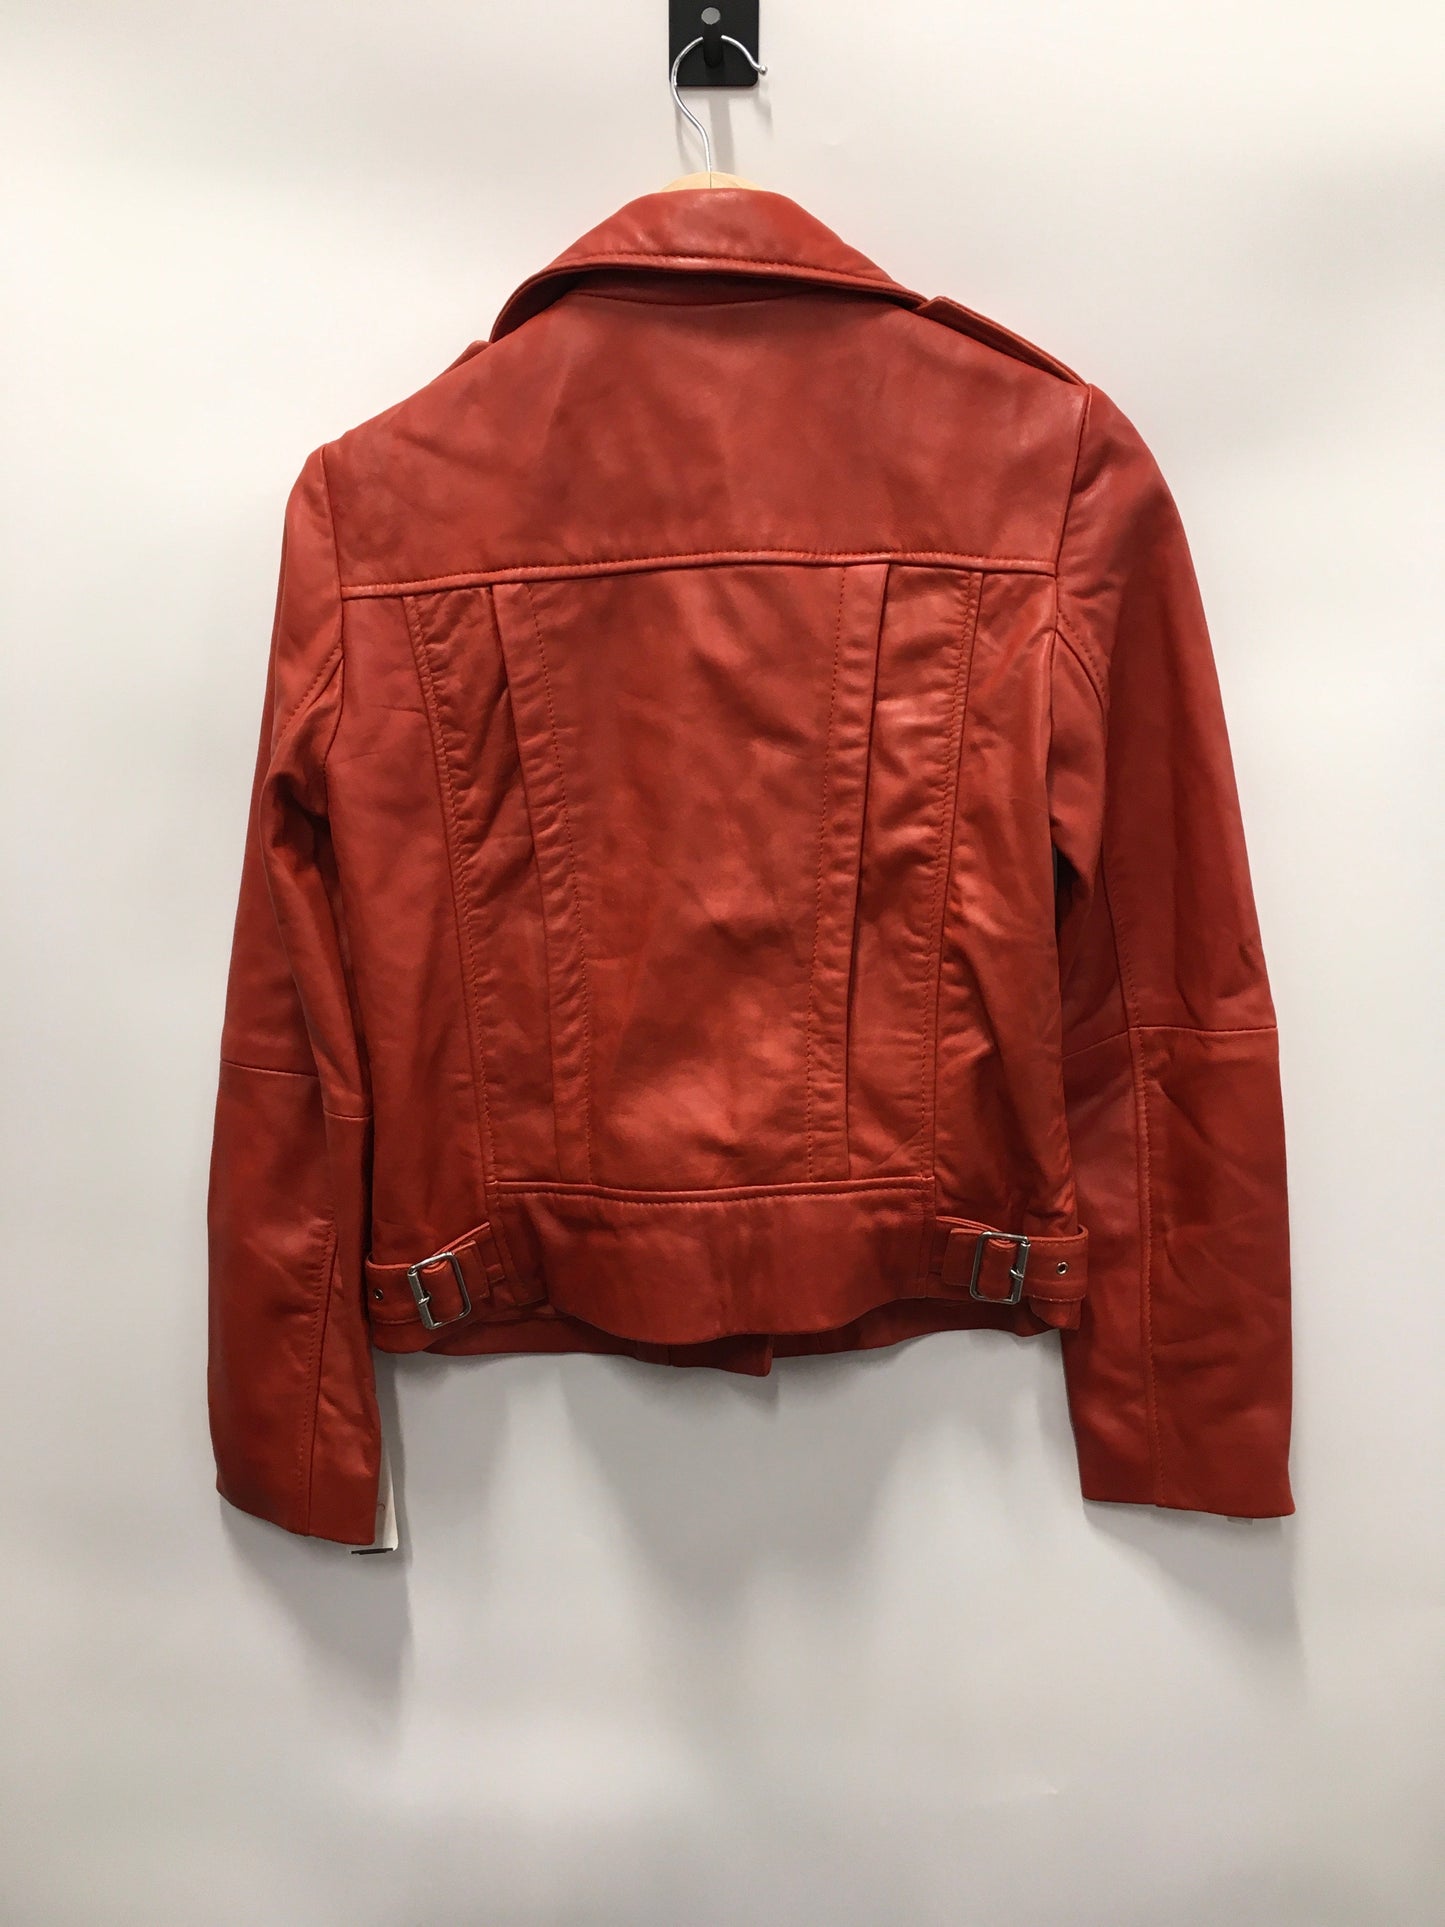 Orange Jacket Leather Mng, Size Xs